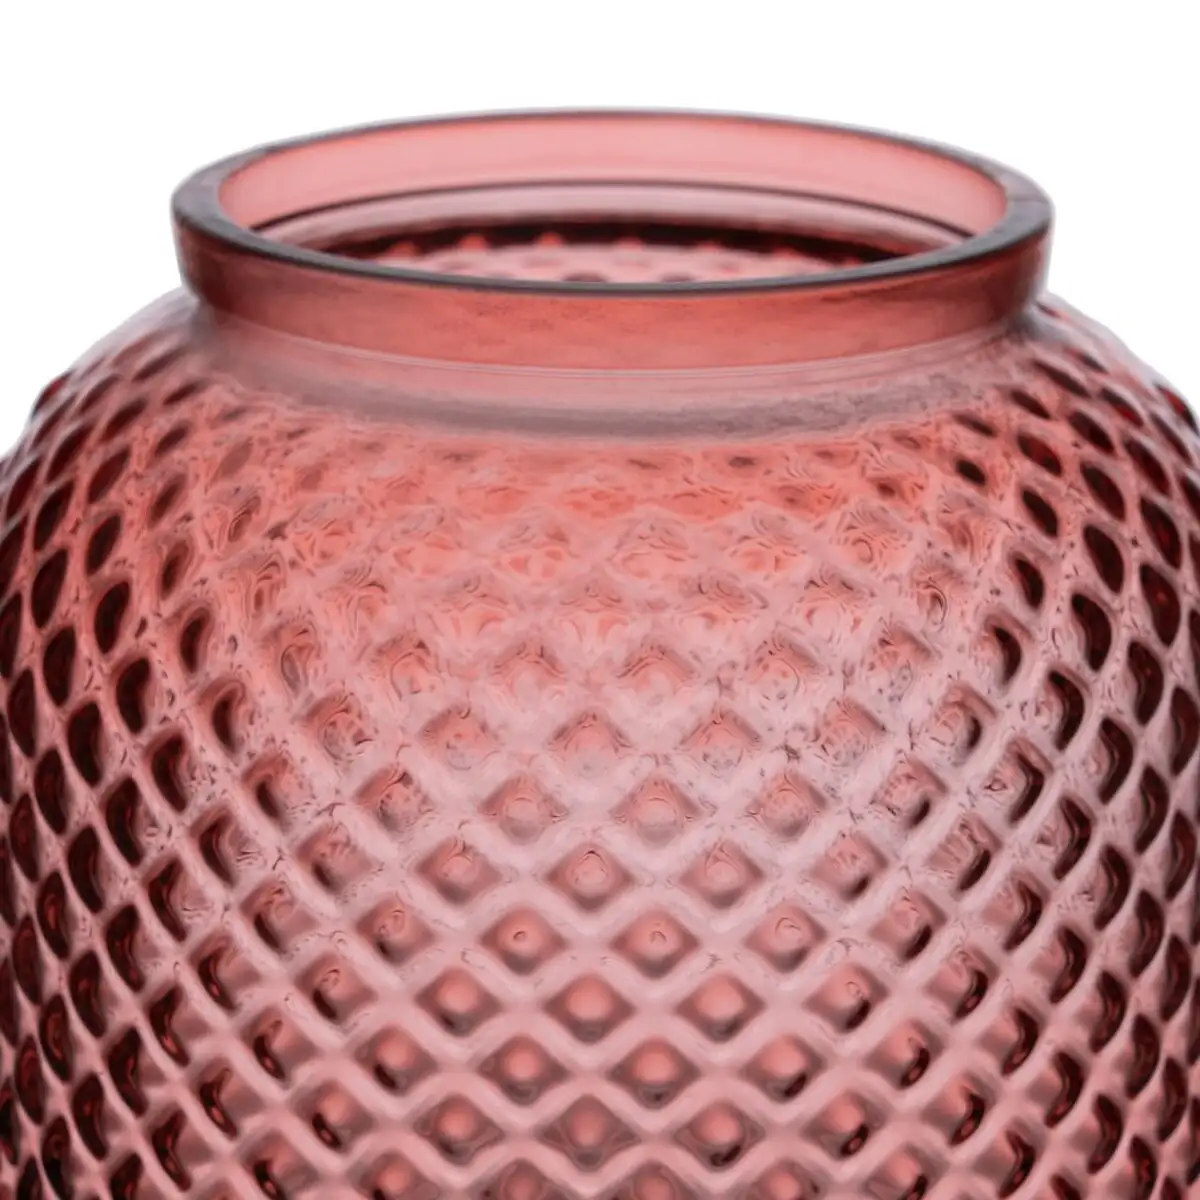 Vase rose verre recycle 19 x 19 x 19 cm_1590. DIAYTAR SENEGAL - Votre Destination Shopping Exquise. Explorez notre boutique en ligne et découvrez des trésors qui ajoutent une touche de sophistication à votre style et à votre espace.